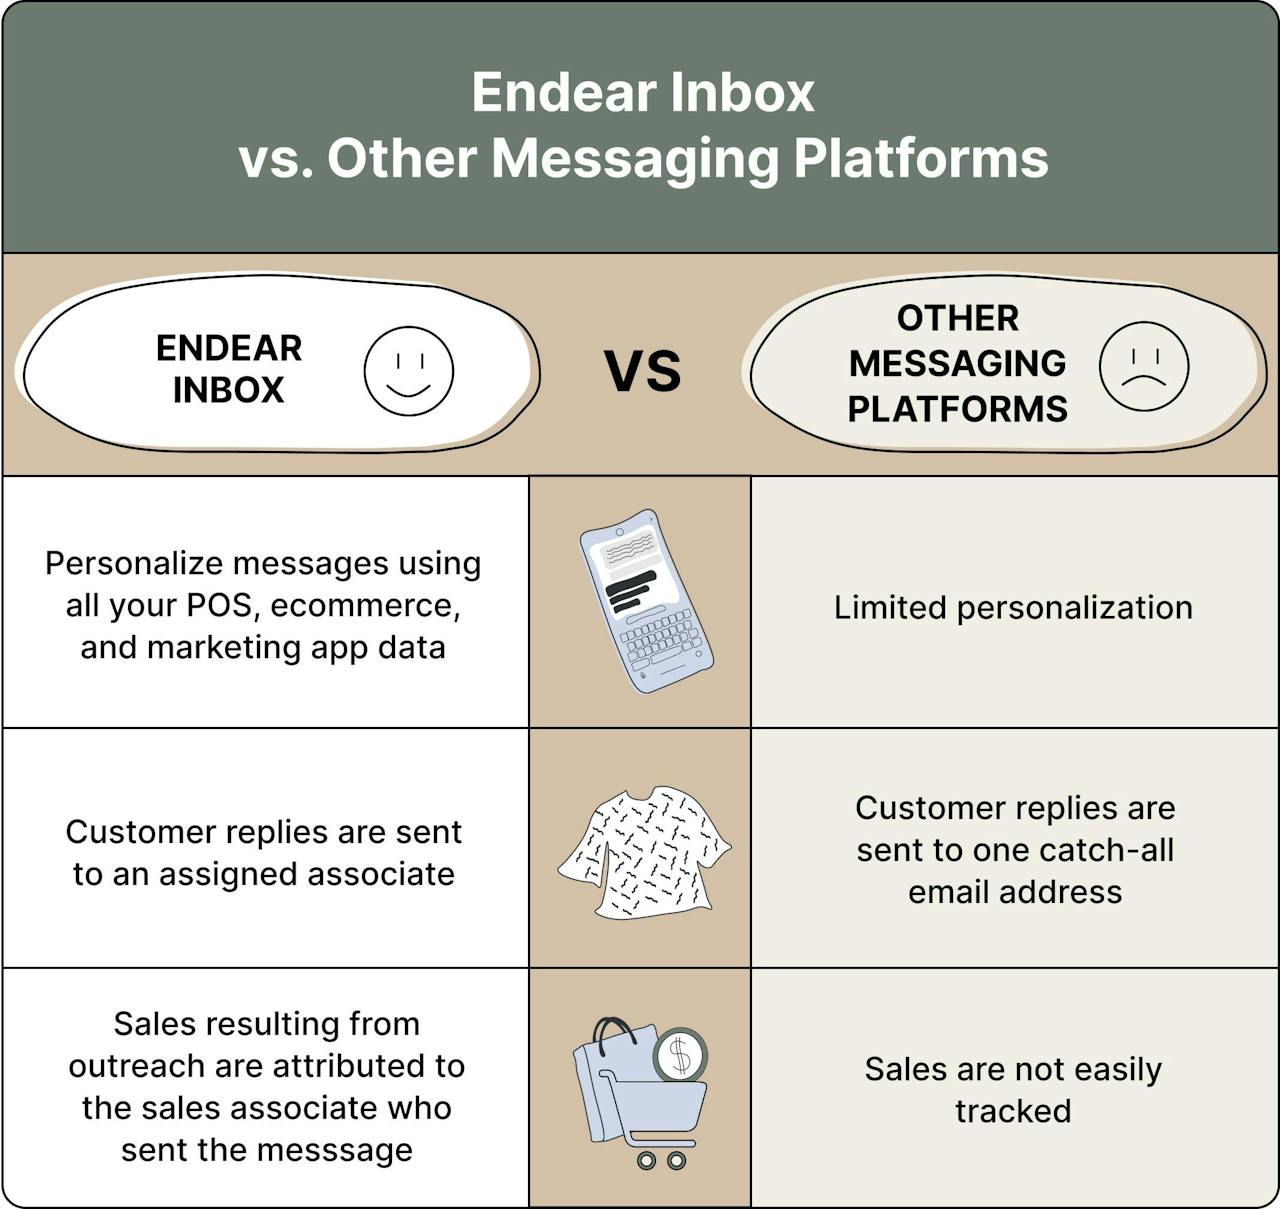 Endear Inbox vs. Other Messaging Platforms